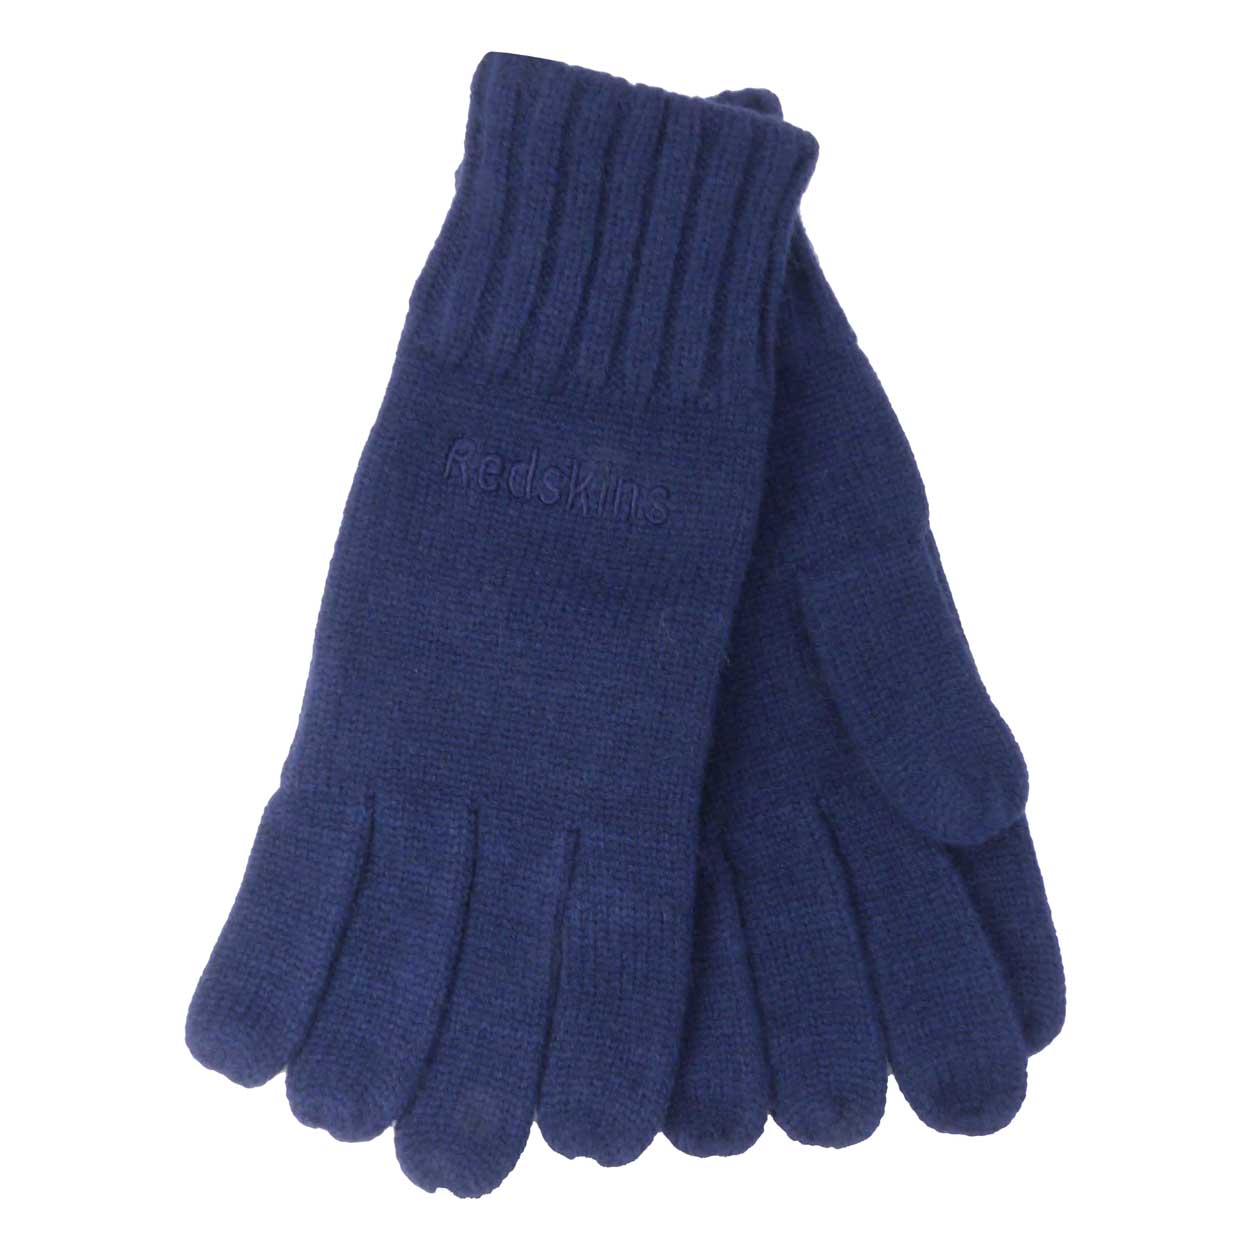 gants redskins middle bleu marine brodés